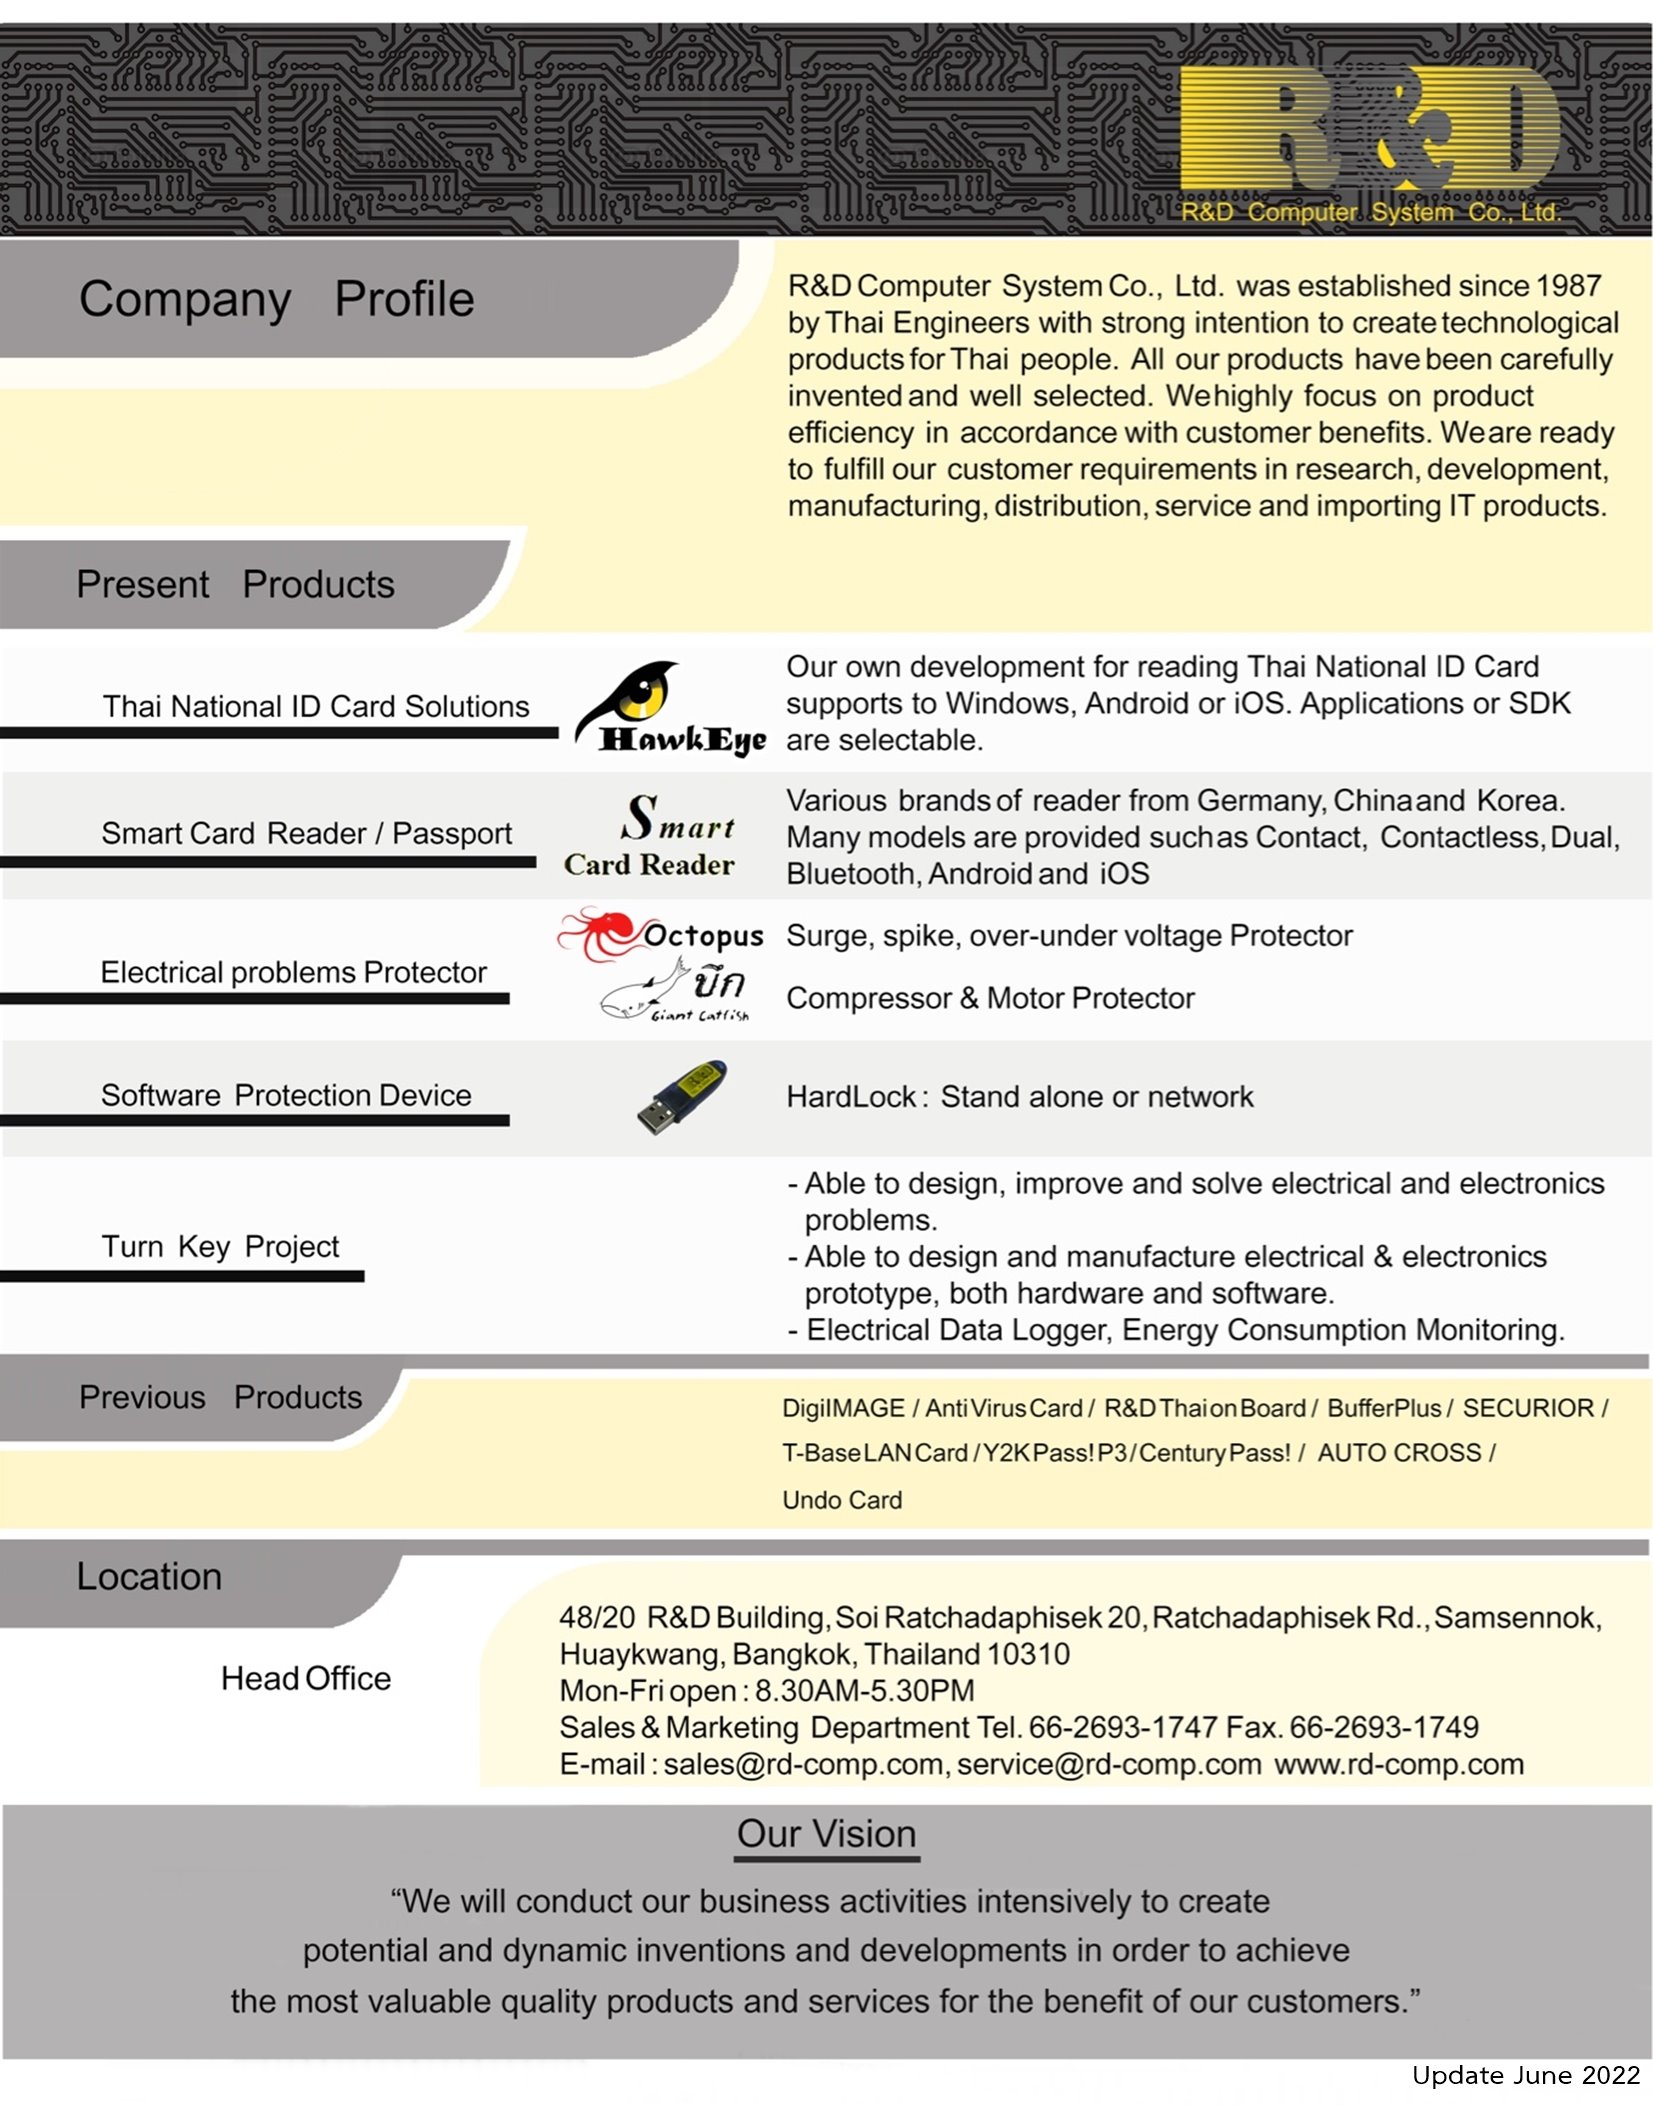 RD-company-profile-2022-English-85p